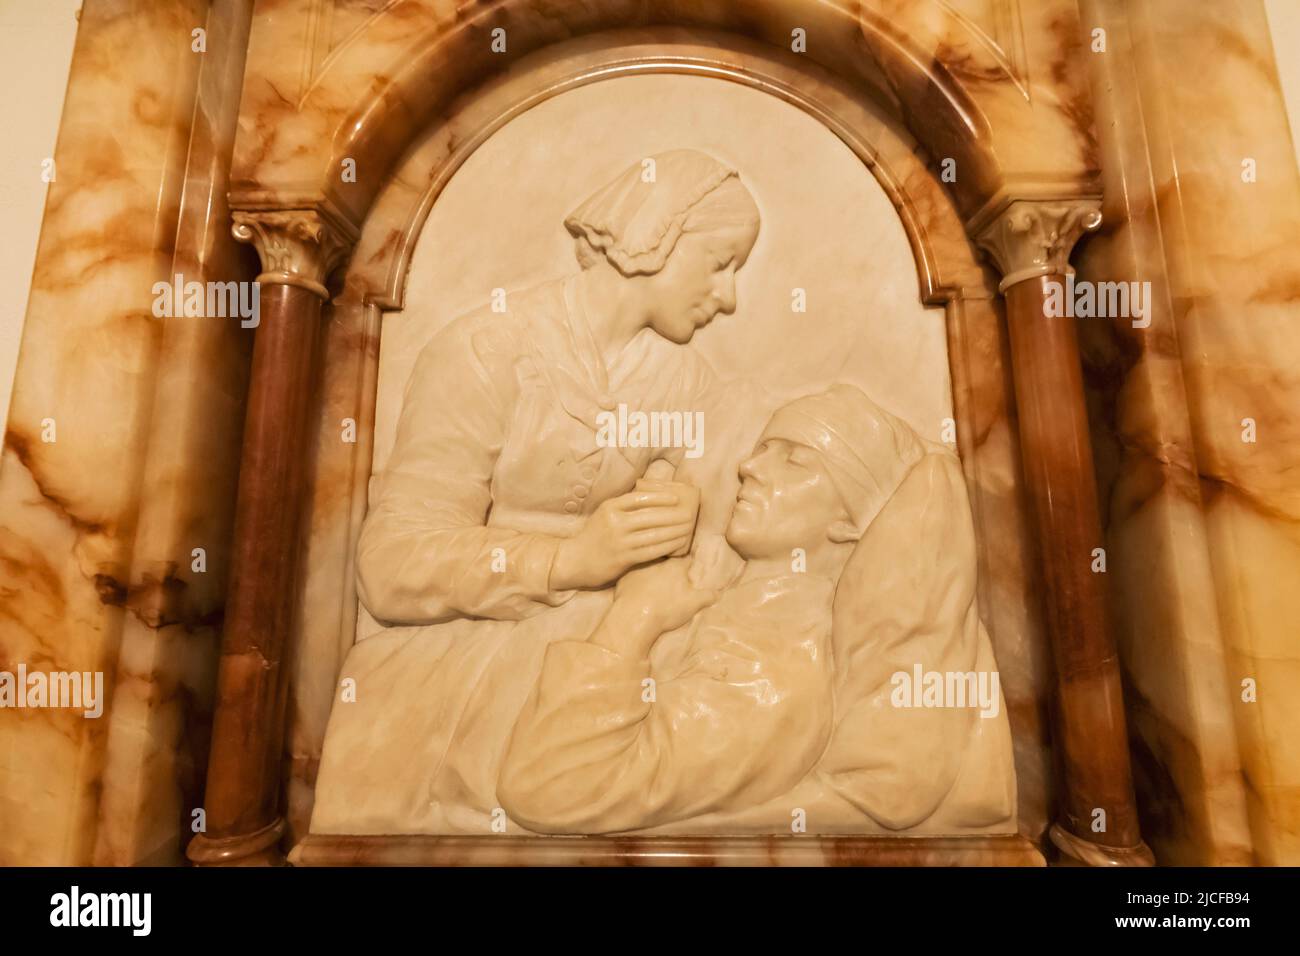 Angleterre, Londres, la cathédrale Saint-Paul, la crypte, la plaque commémorative Florence Nightengale représentant Florence Caring pour Soldiier blessé Banque D'Images